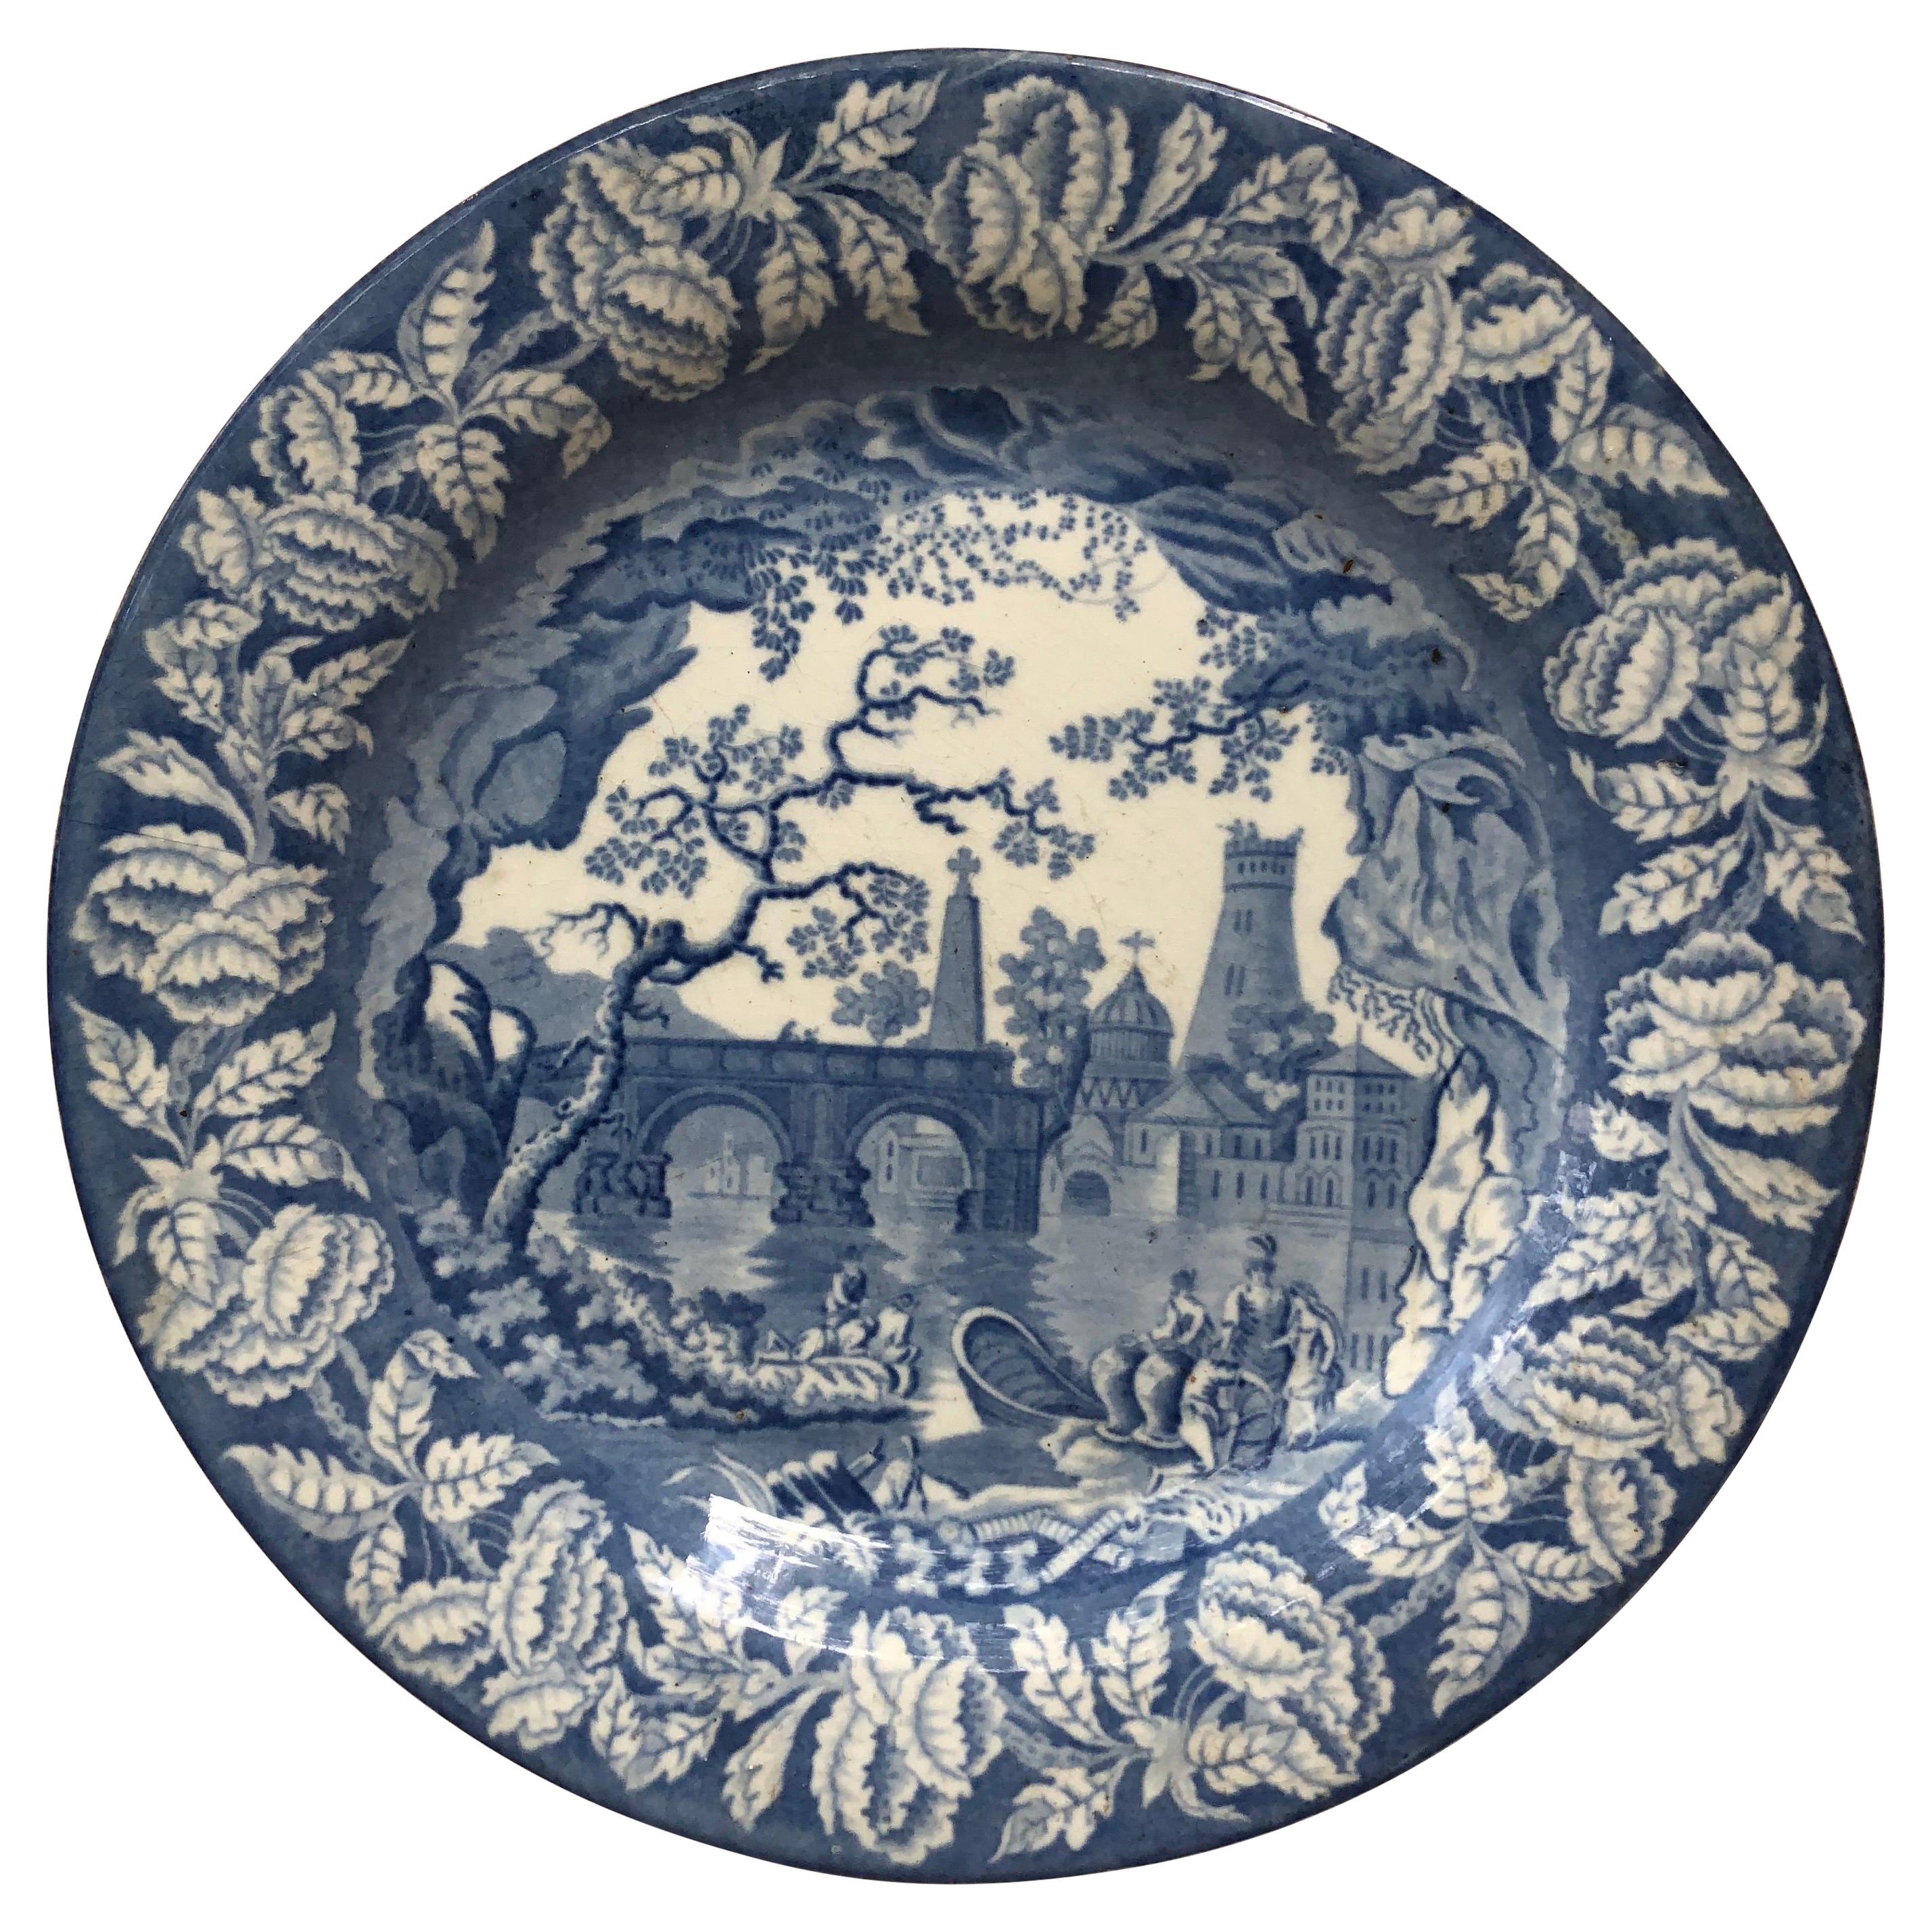 Viktorianischer blau-weißer Staffordshire-Teller aus dem 19. Jahrhundert